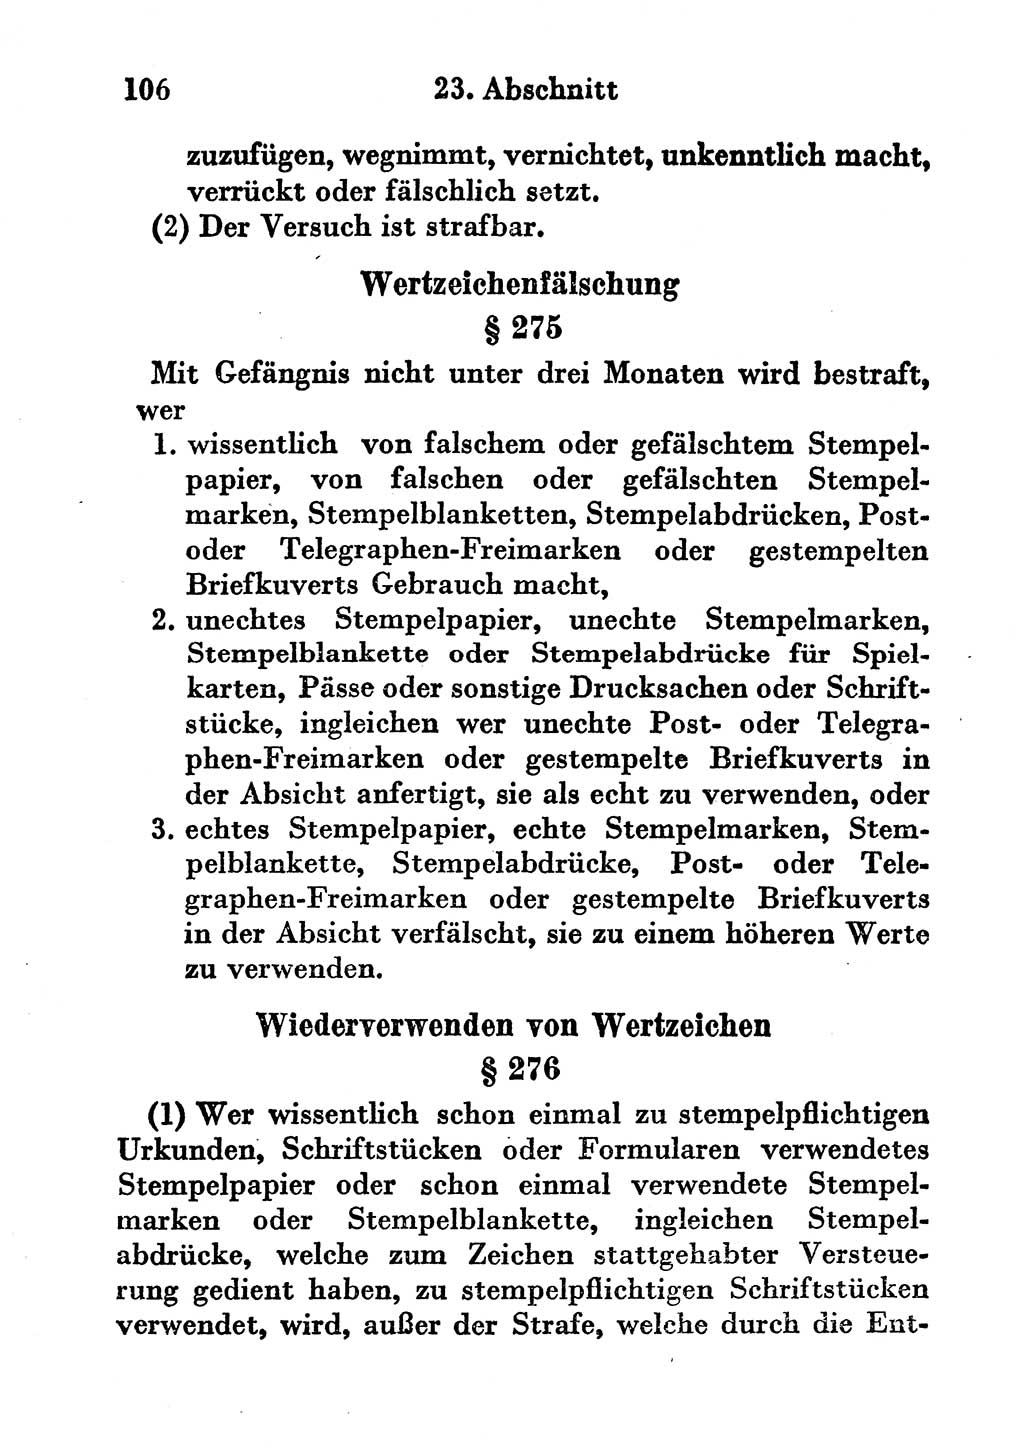 Strafgesetzbuch (StGB) und andere Strafgesetze [Deutsche Demokratische Republik (DDR)] 1956, Seite 106 (StGB Strafges. DDR 1956, S. 106)